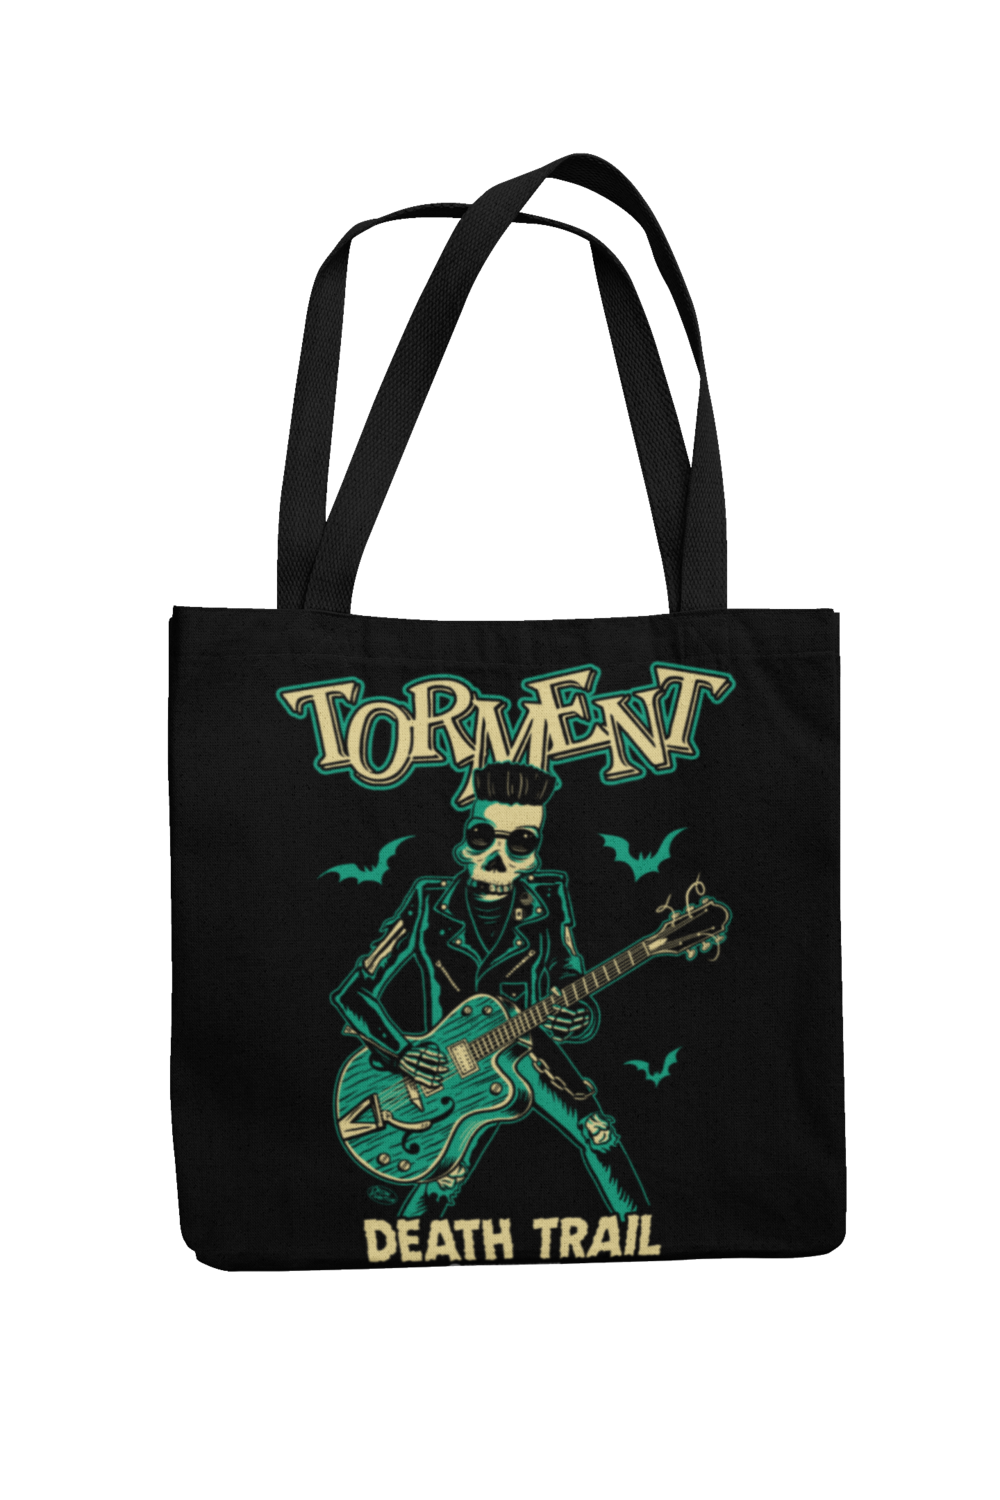 TORMENT "Death train" Cotton Bag